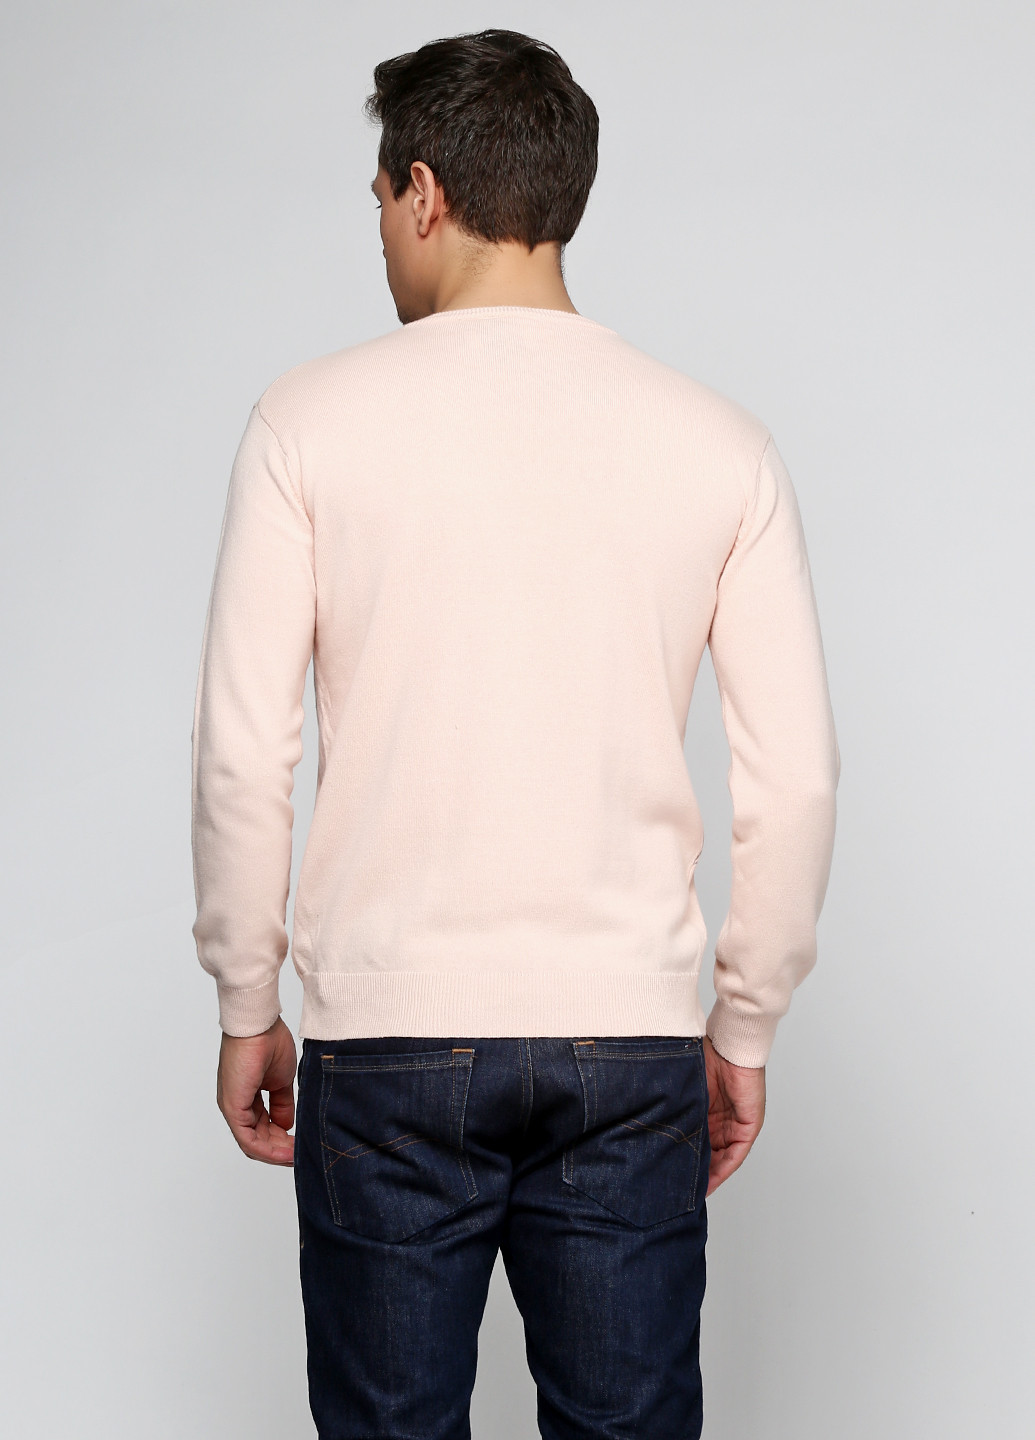 Светло-розовый демисезонный пуловер пуловер C.B.K